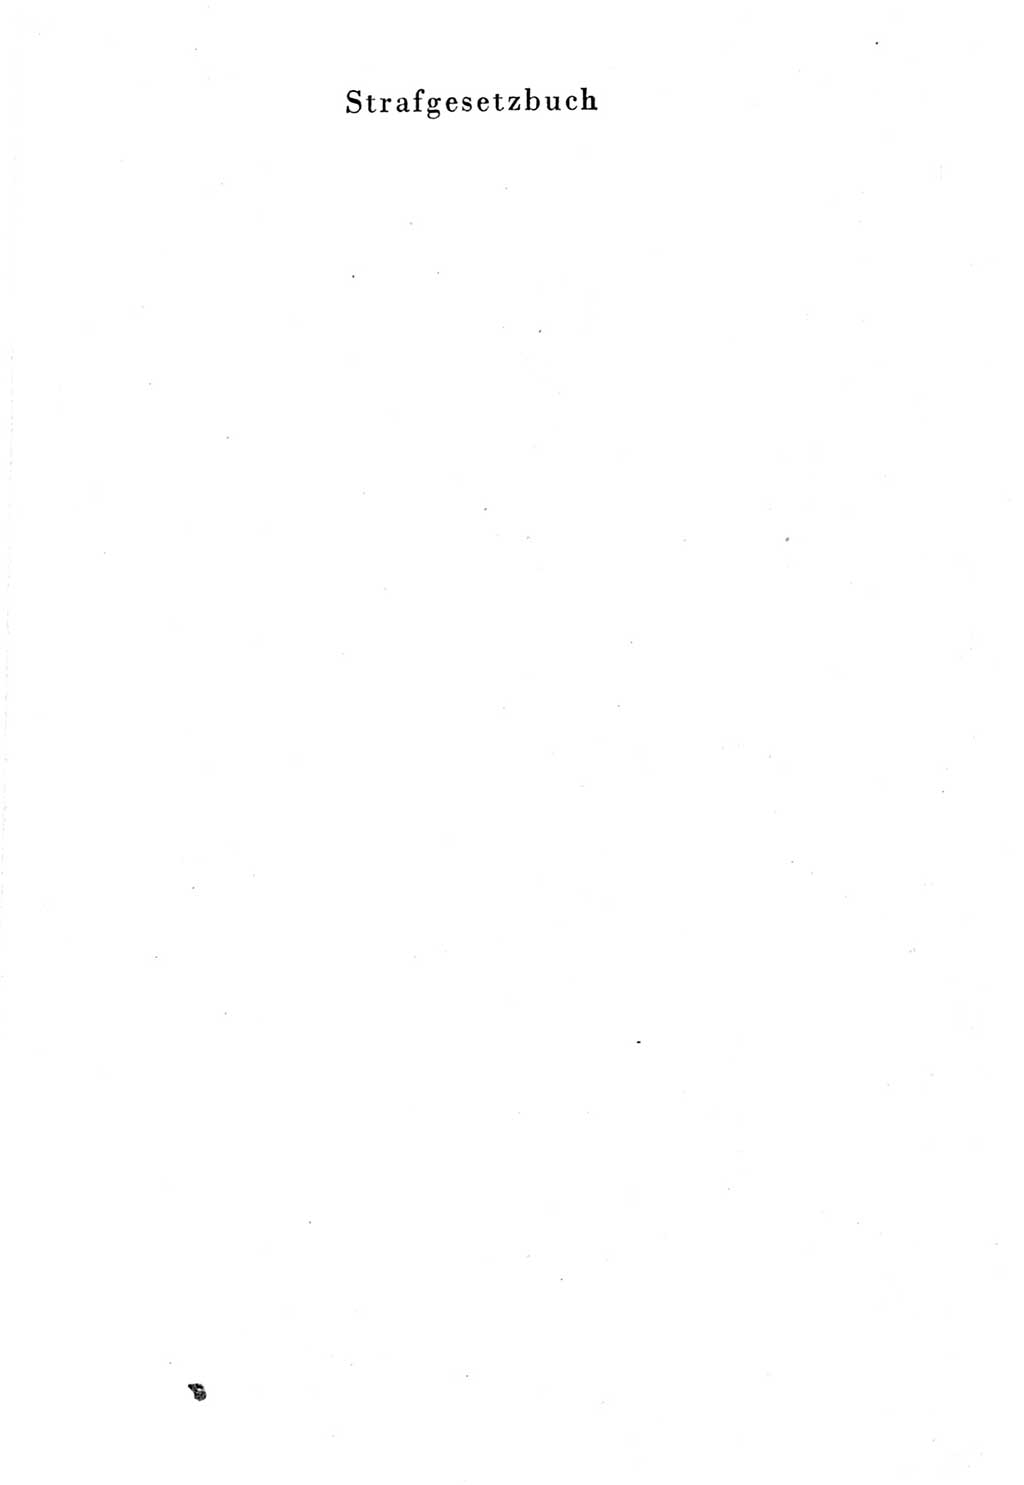 Strafgesetzbuch (StGB) und andere Strafgesetze [Deutsche Demokratische Republik (DDR)] 1957, Seite 1 (Einl. StGB Strafges. DDR 1957, S. 1)